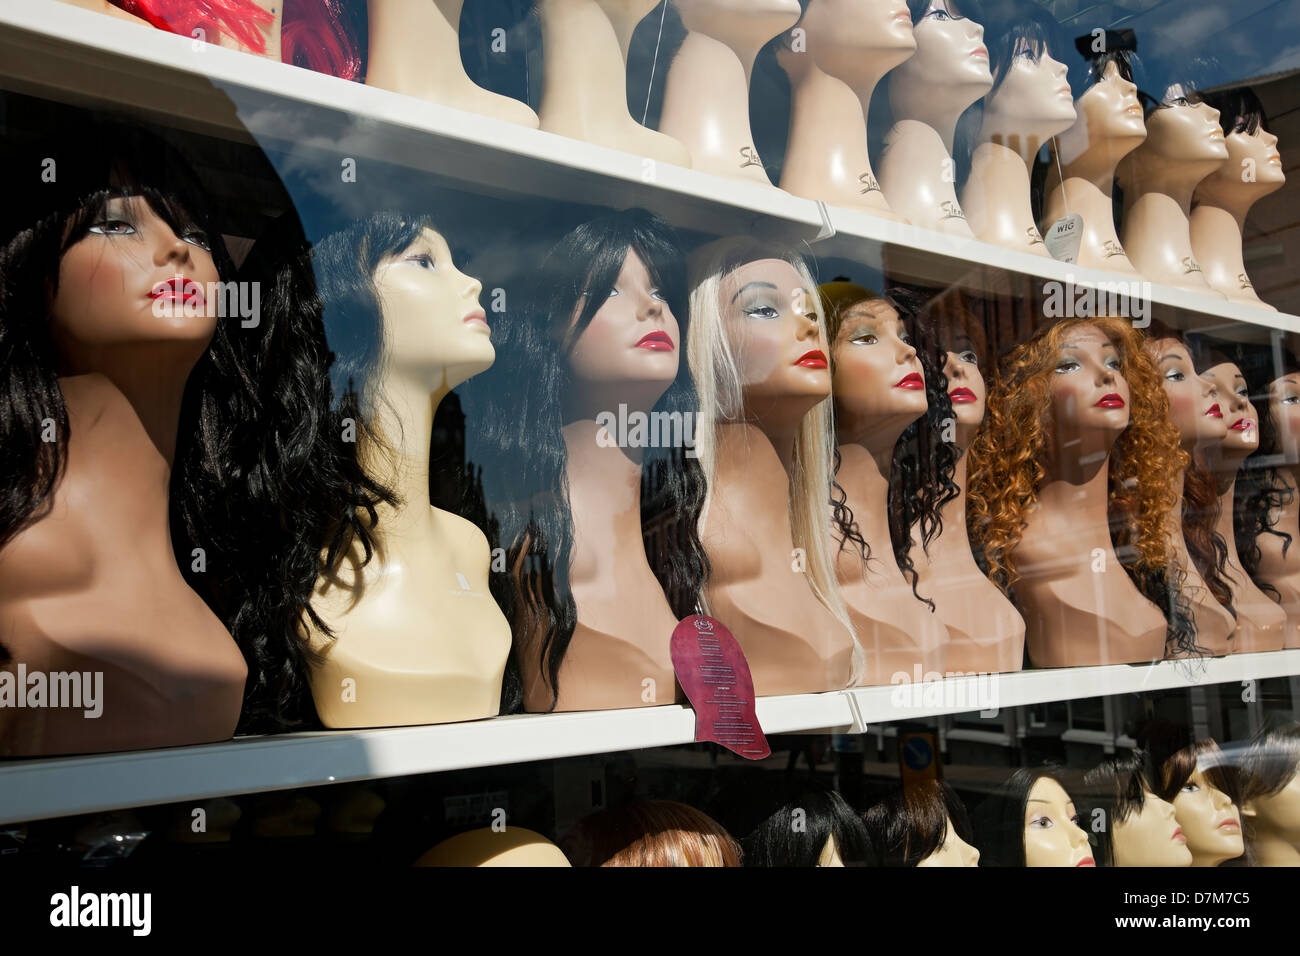 Mujeres mujeres pelucas en exhibición en la tienda de la tienda de la ventana Inglaterra Reino Unido GB Gran Bretaña Foto de stock